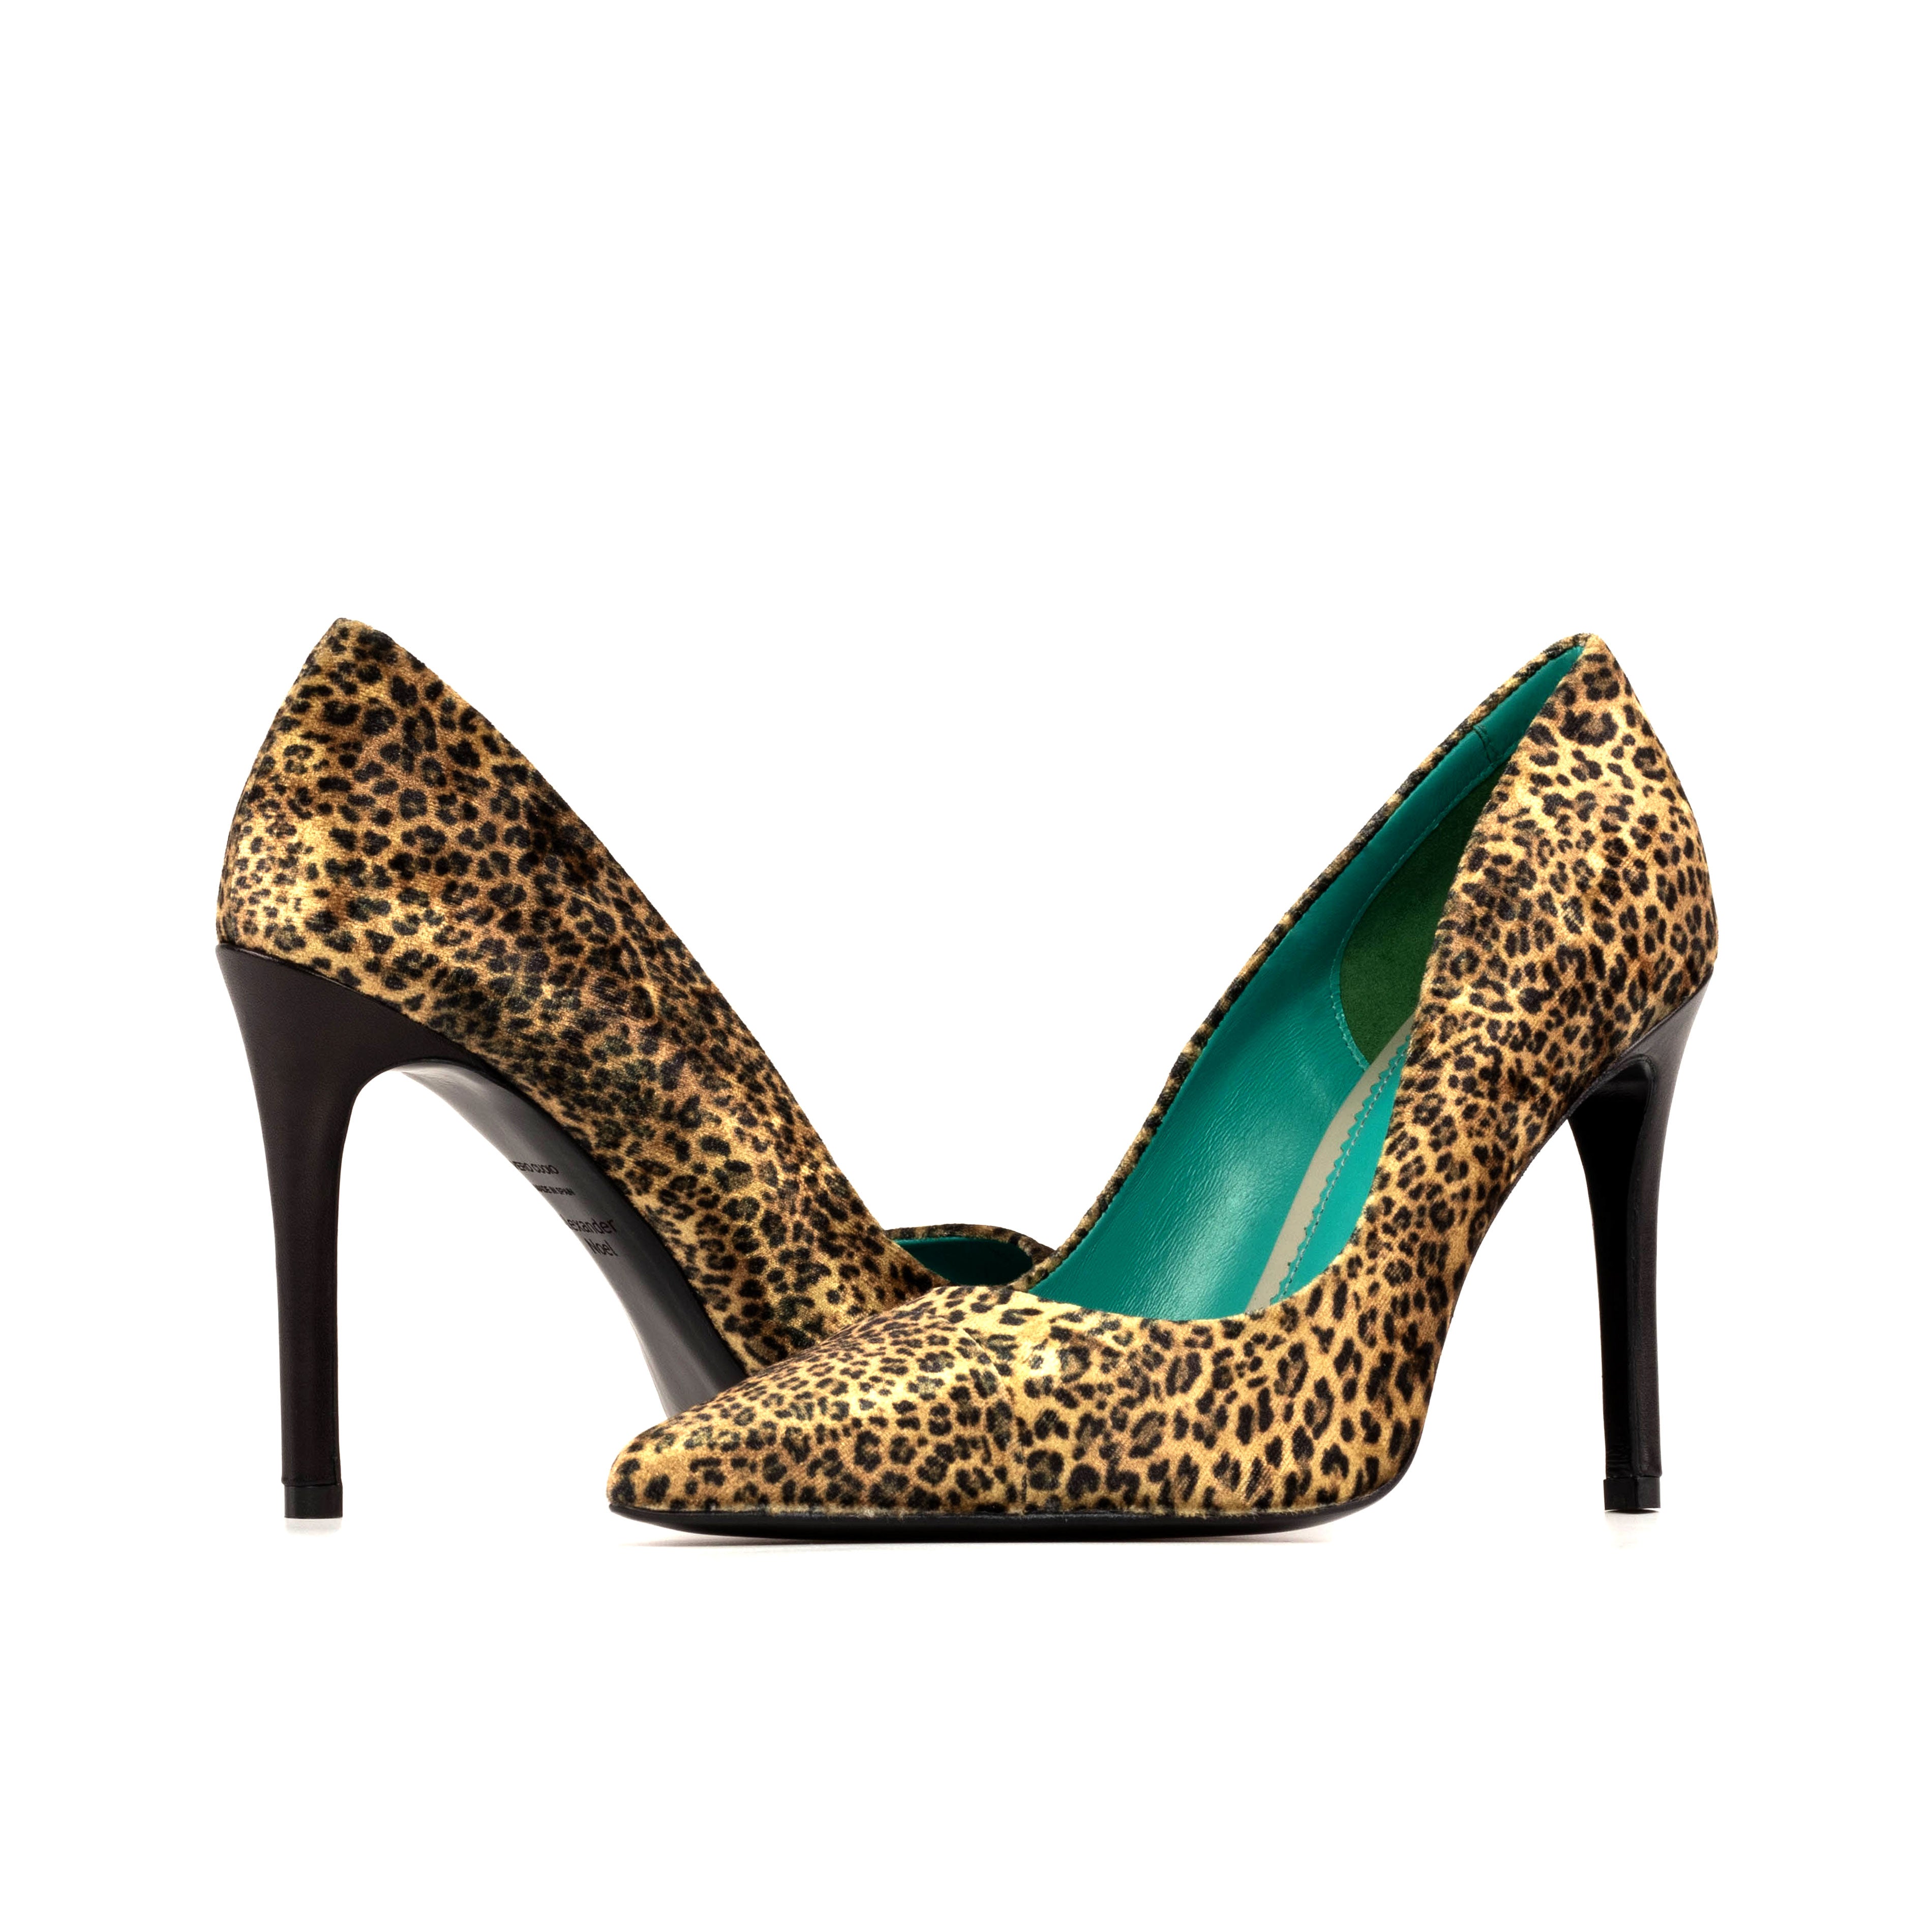 High heels svg, Leopard Stilettos